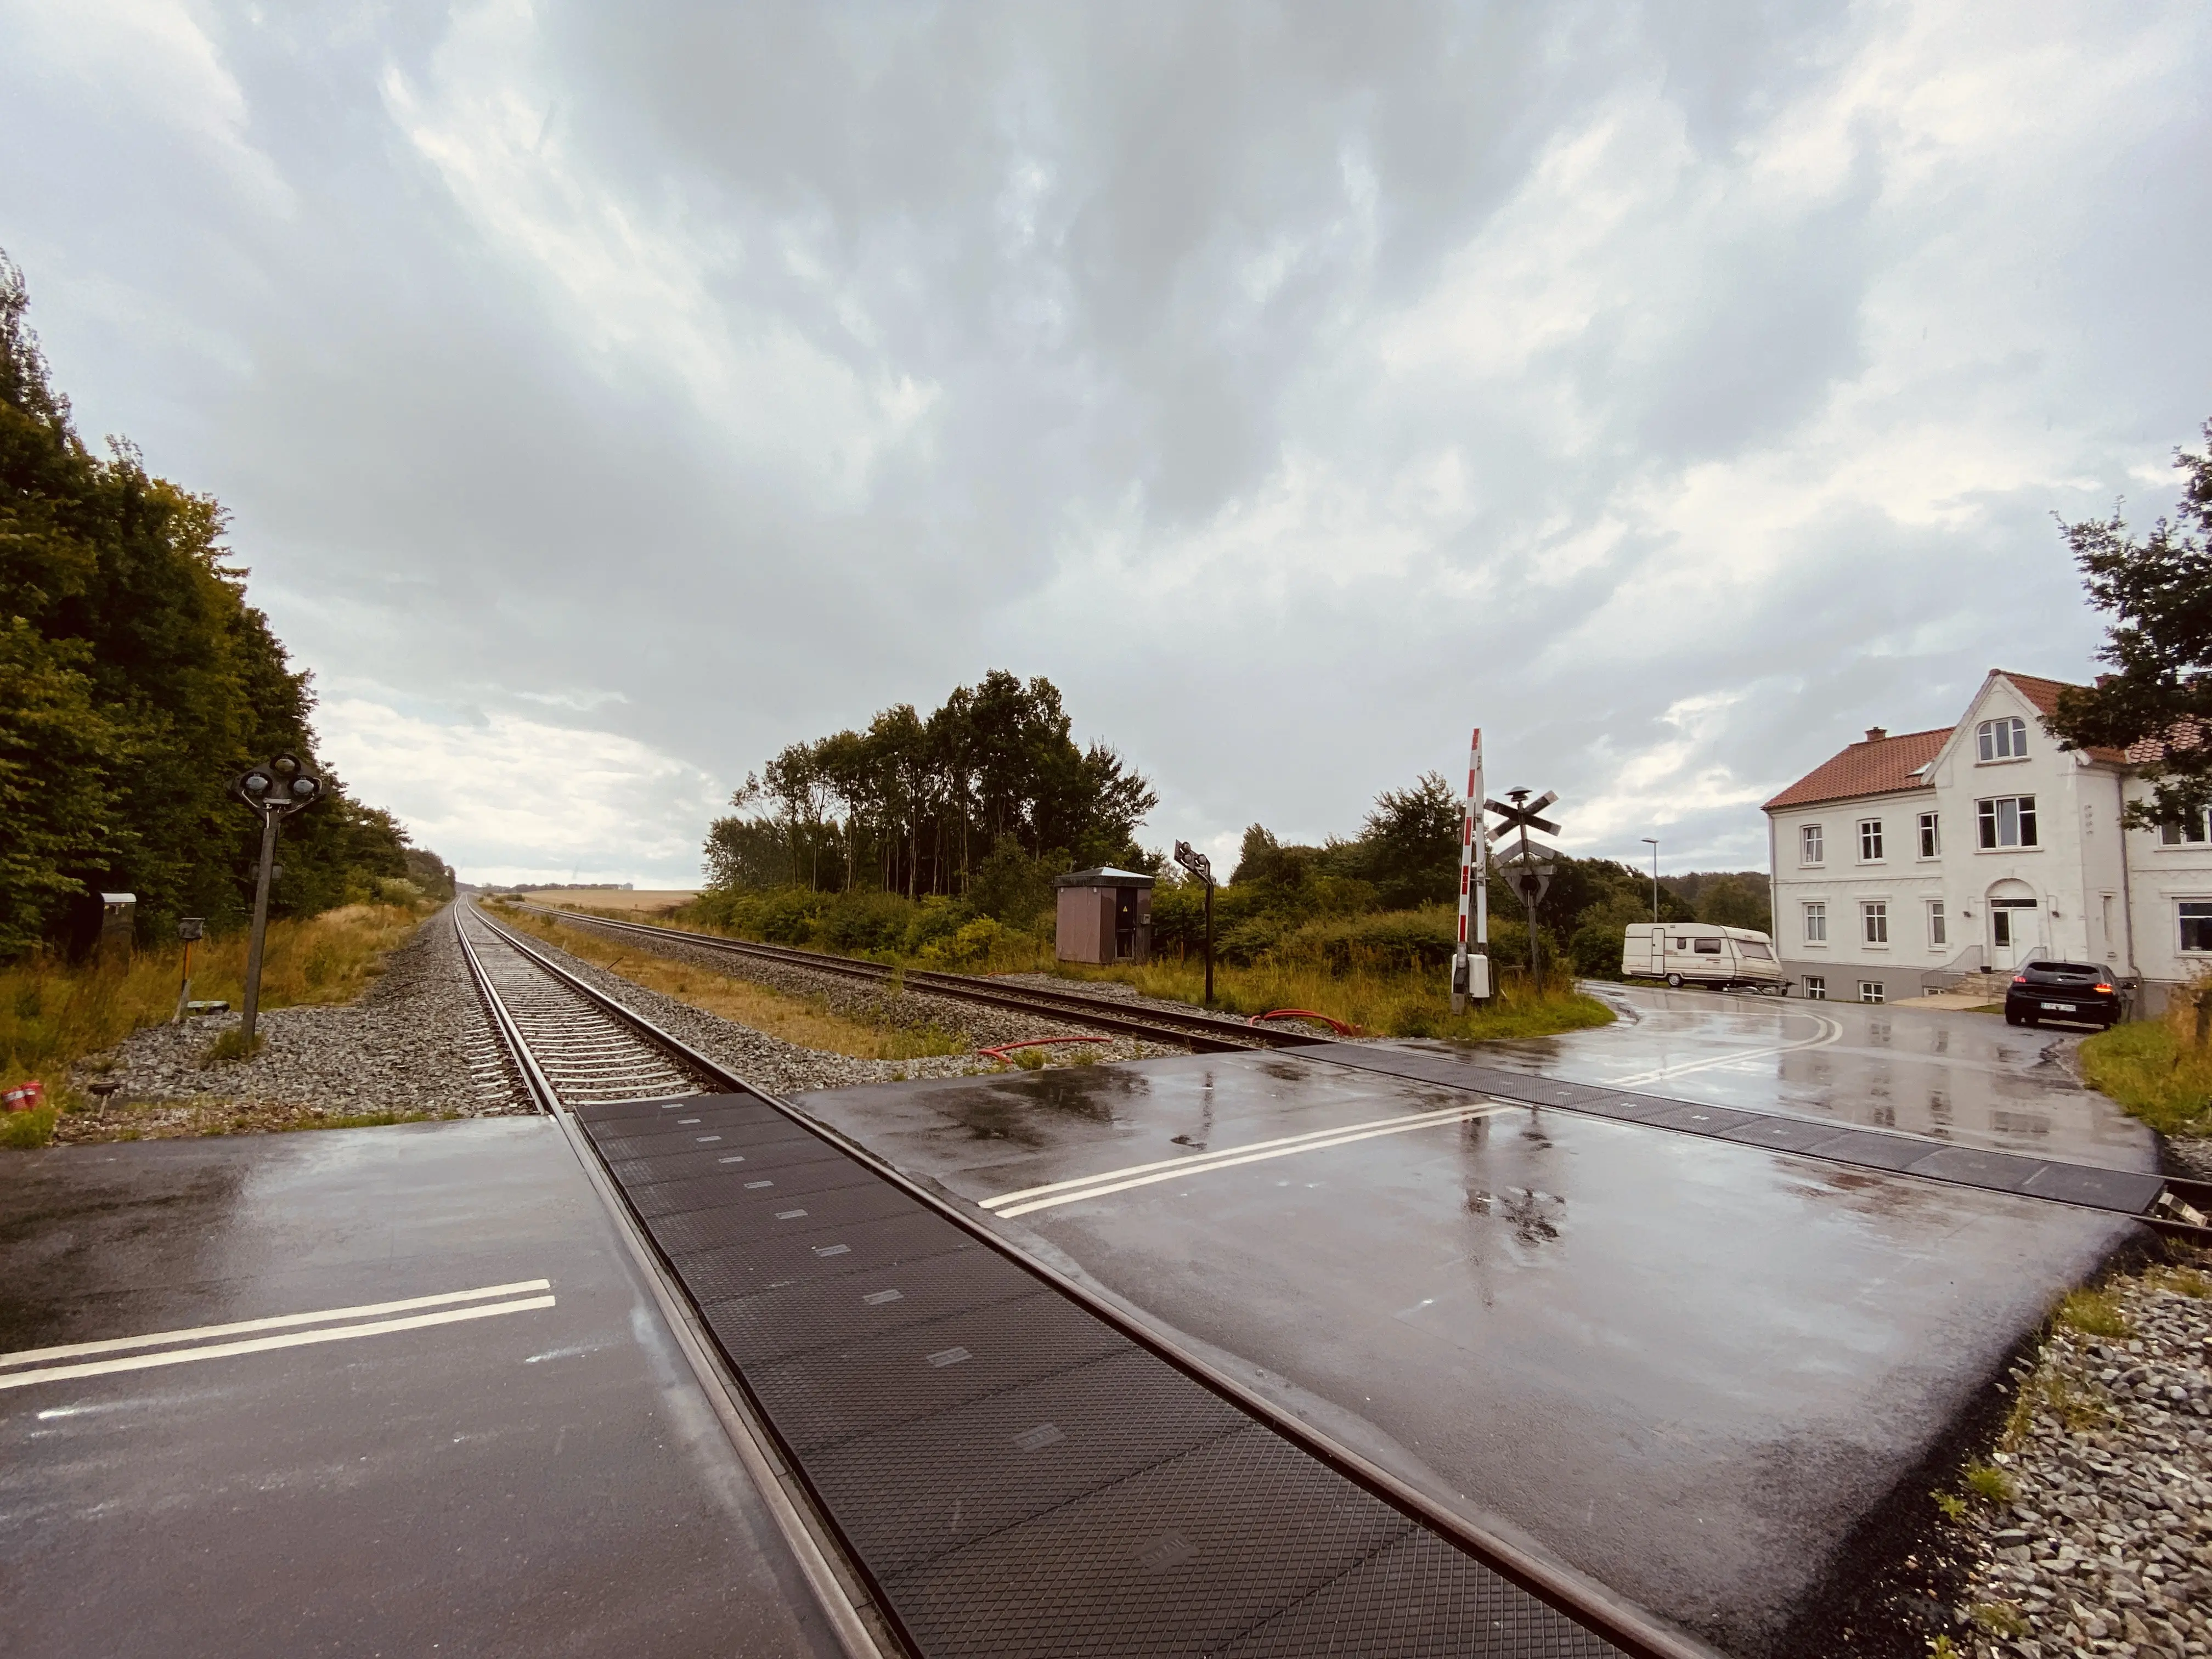 Billede af Bjerregrav Station - Station er nedrevet, men Bjerregrav Station har ligget her.